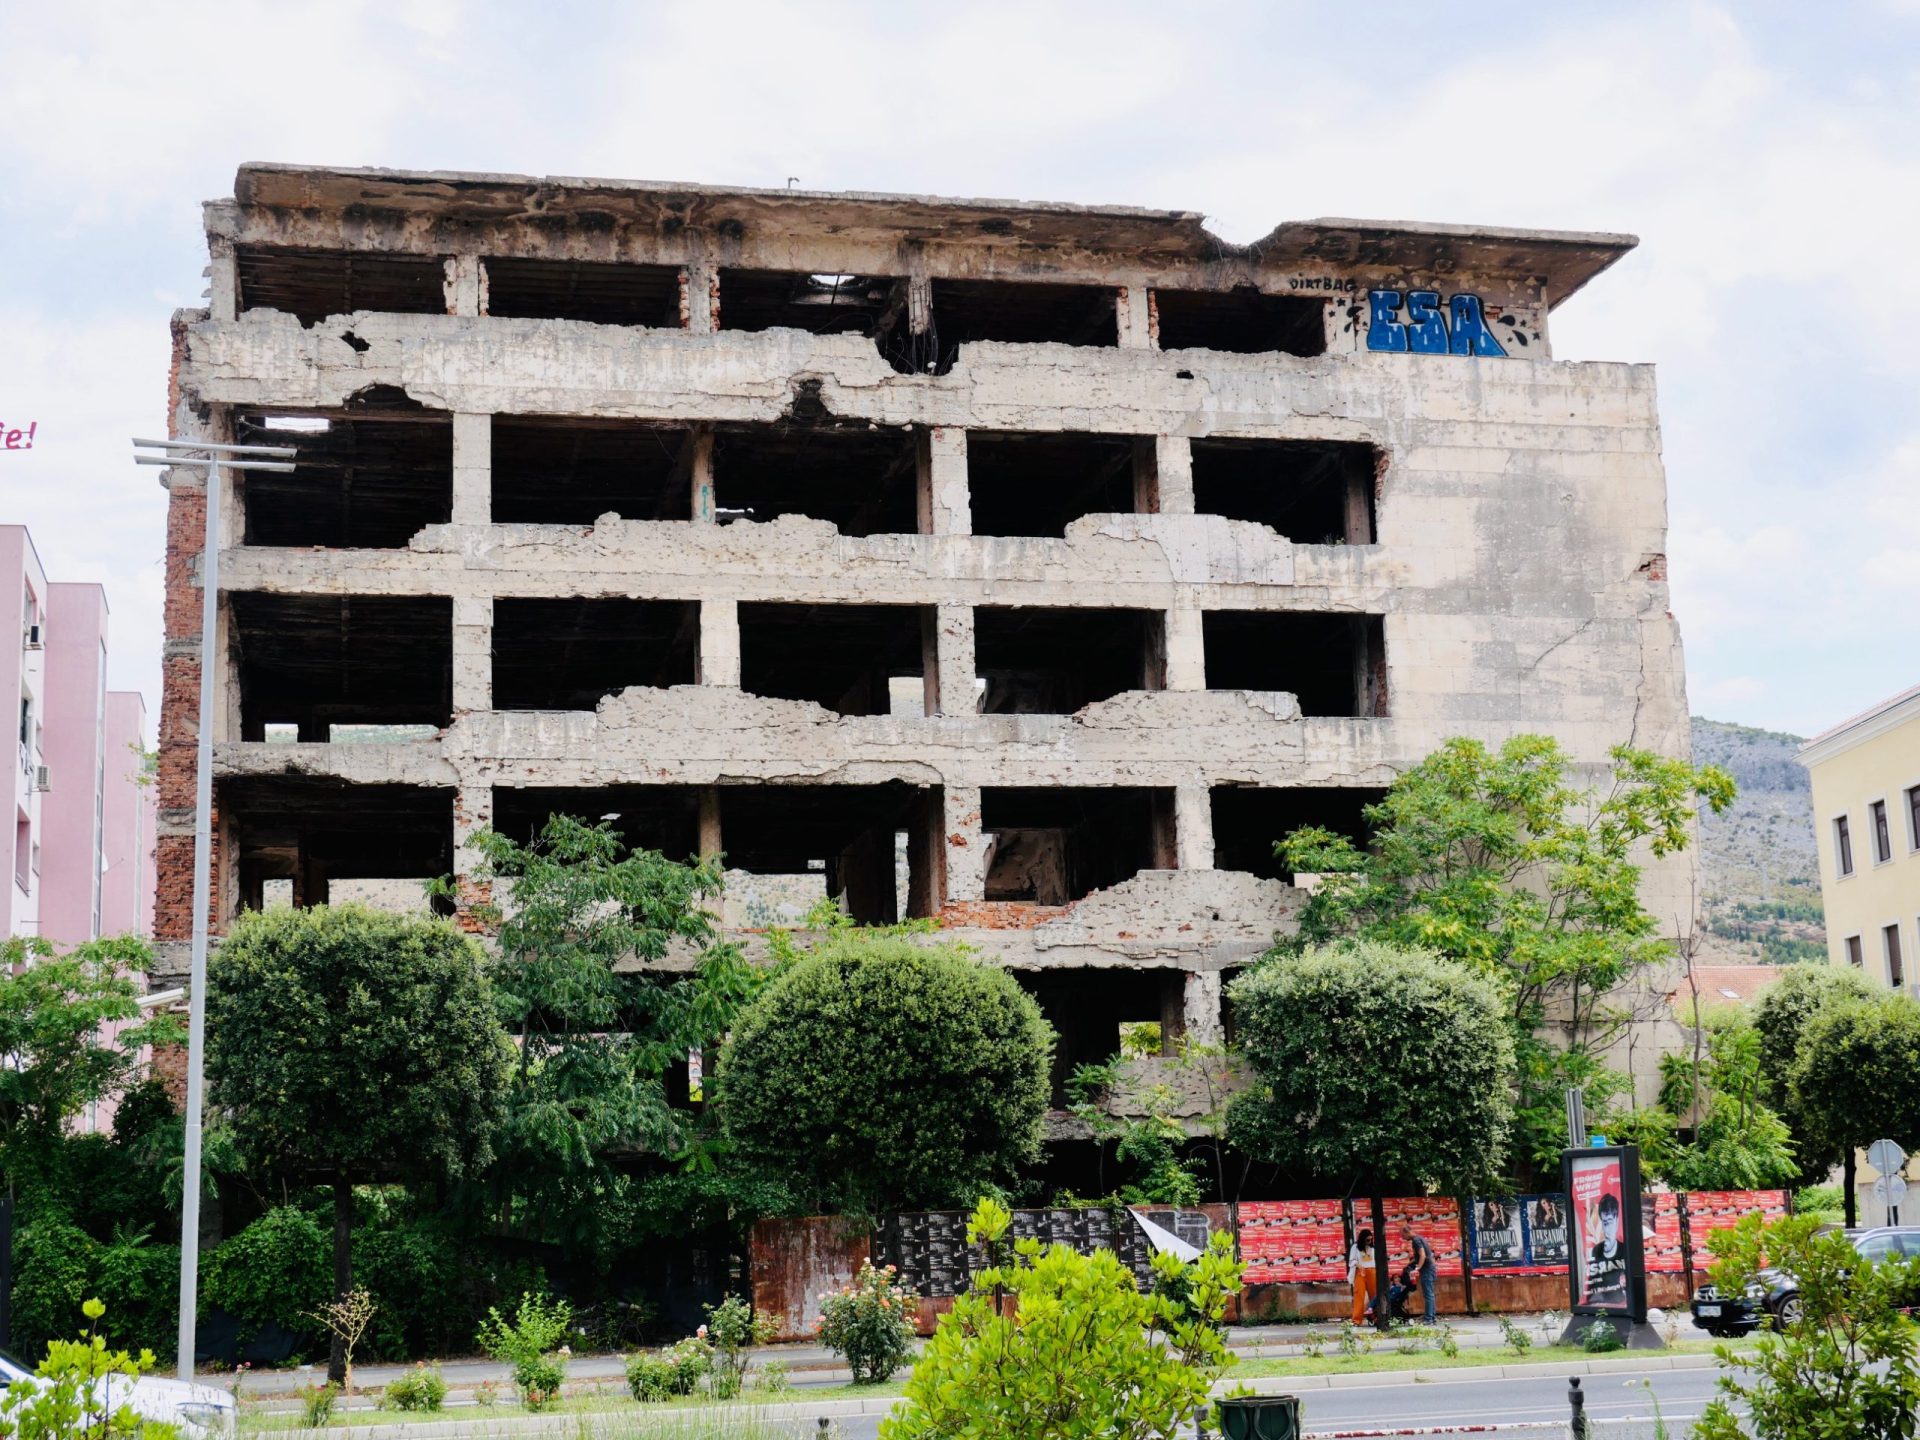 oorlogsschade aan een gebouw in Mostar